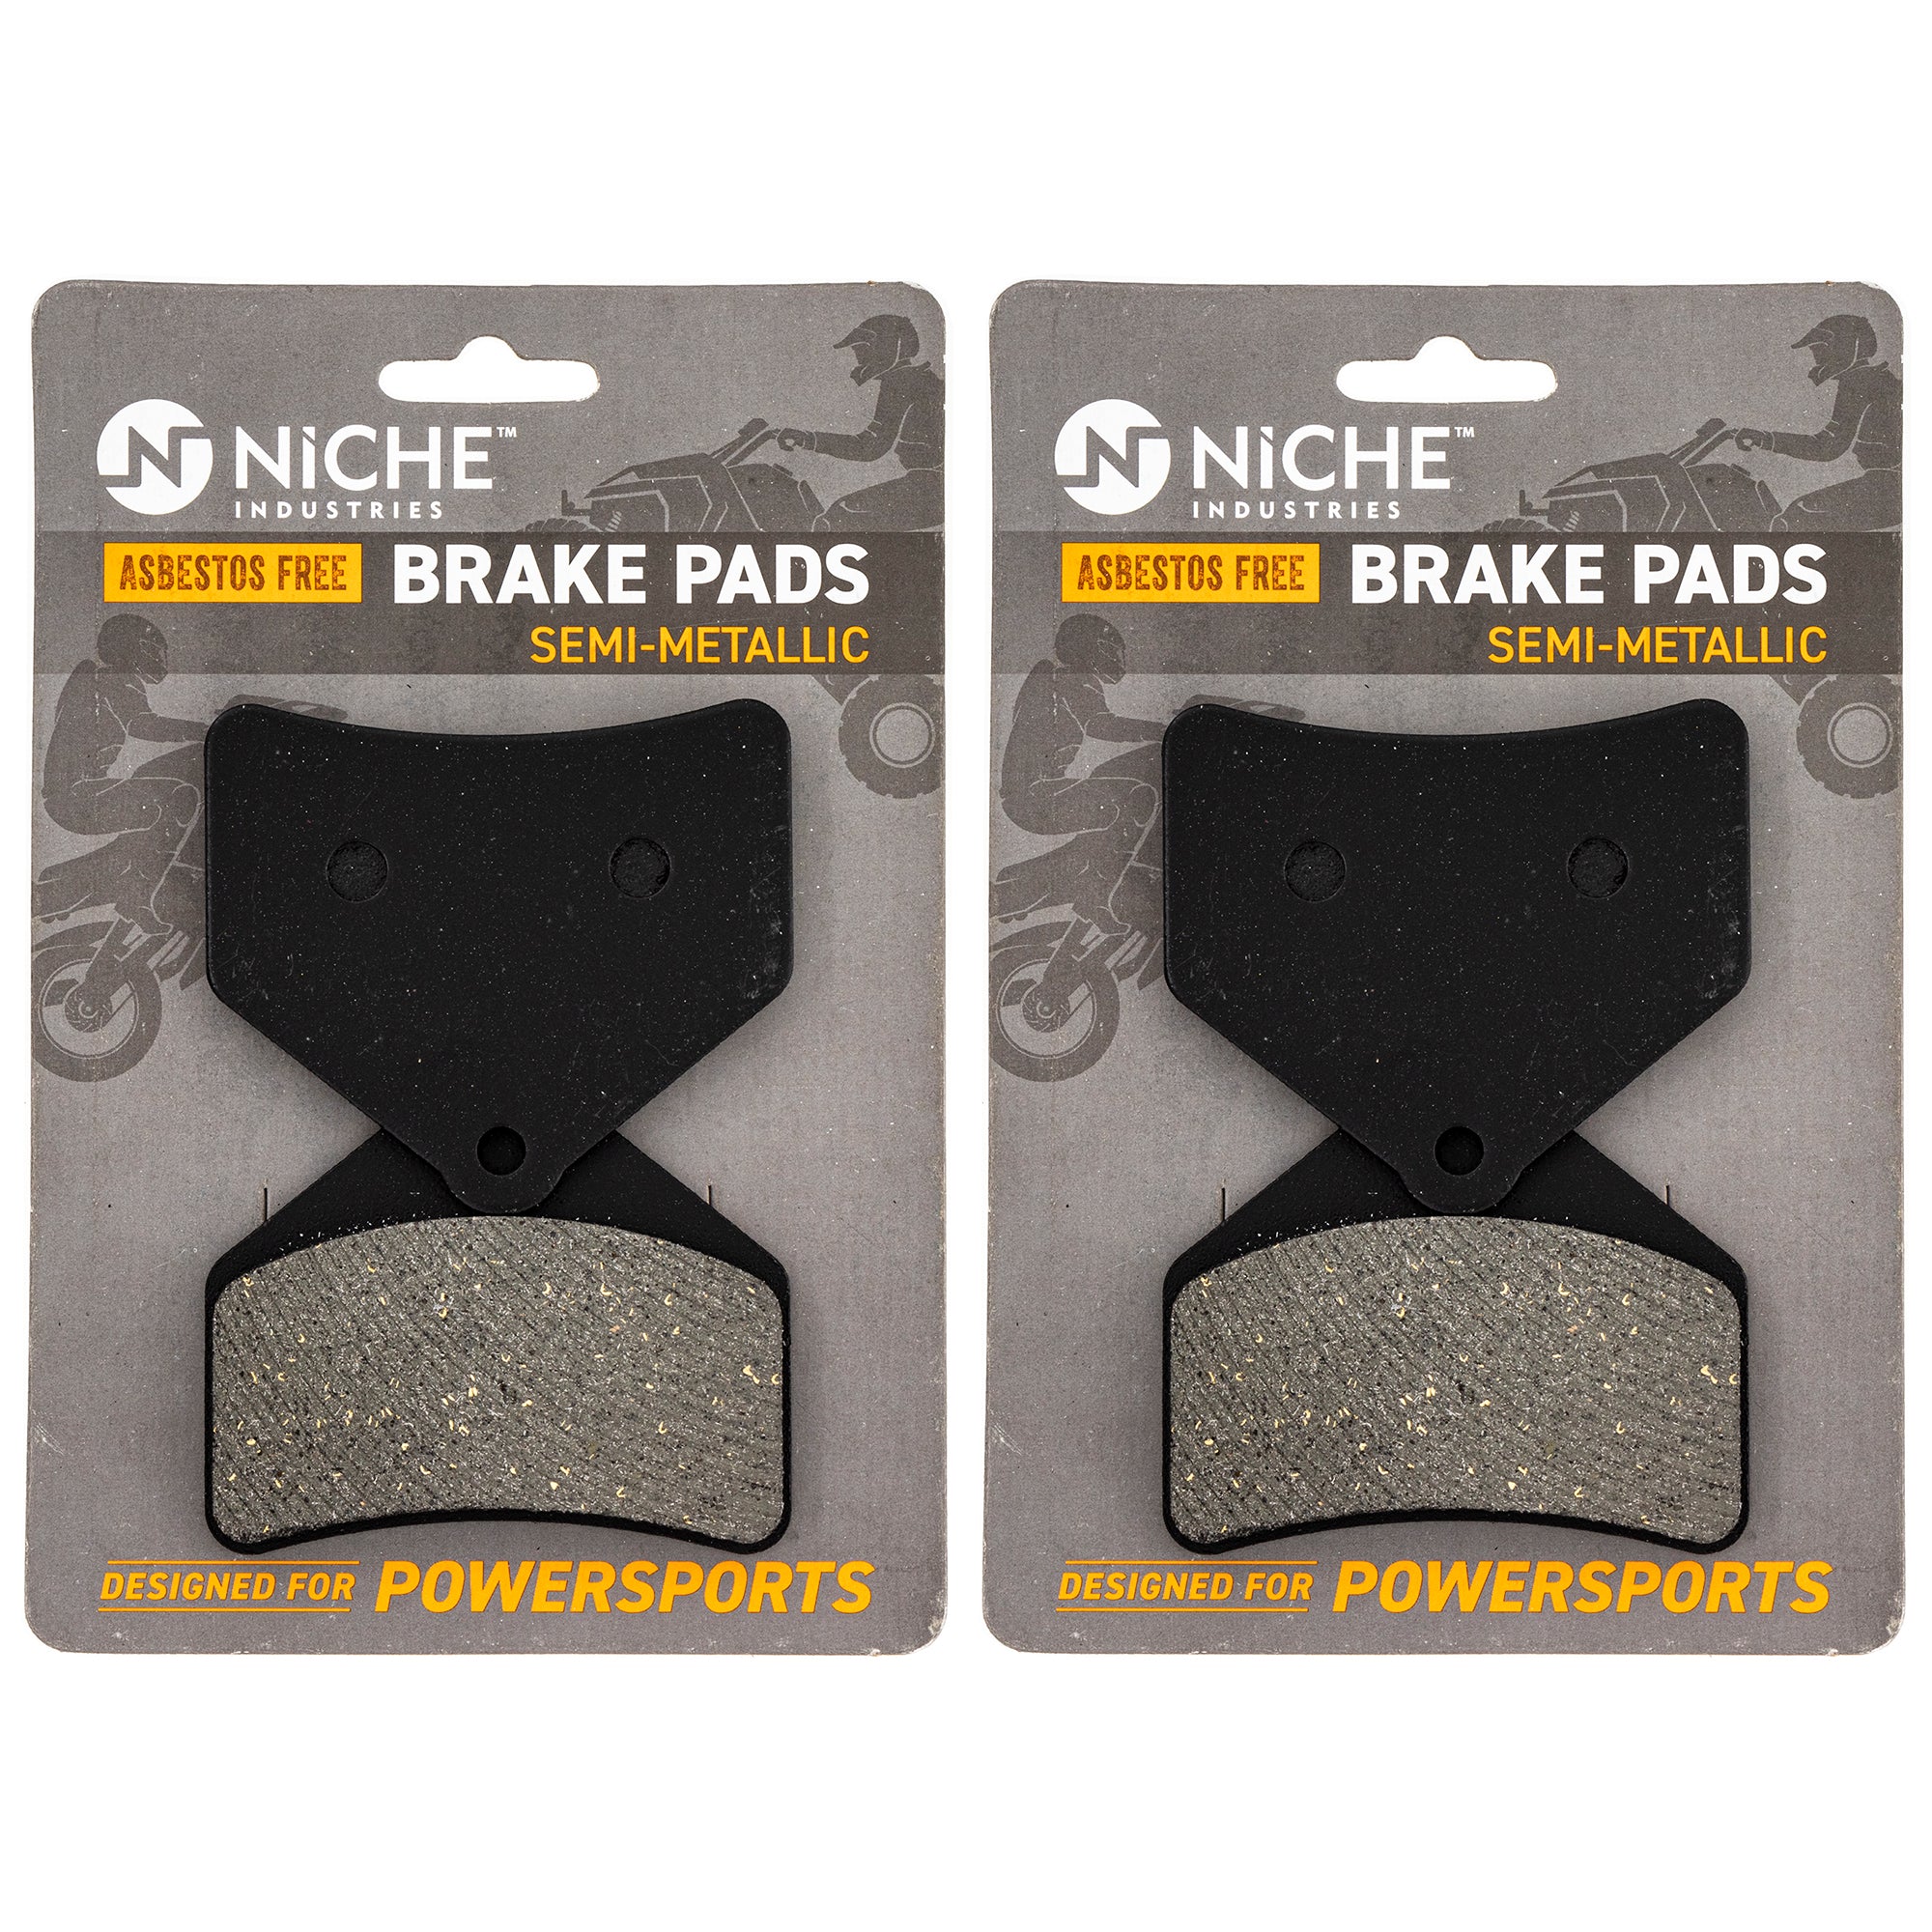 Rear Brake Pads Kit Semi-Metallic 2-Pack for Arctic Cat Textron Cat 0702-563 1602-465 NICHE 519-KPA2501D